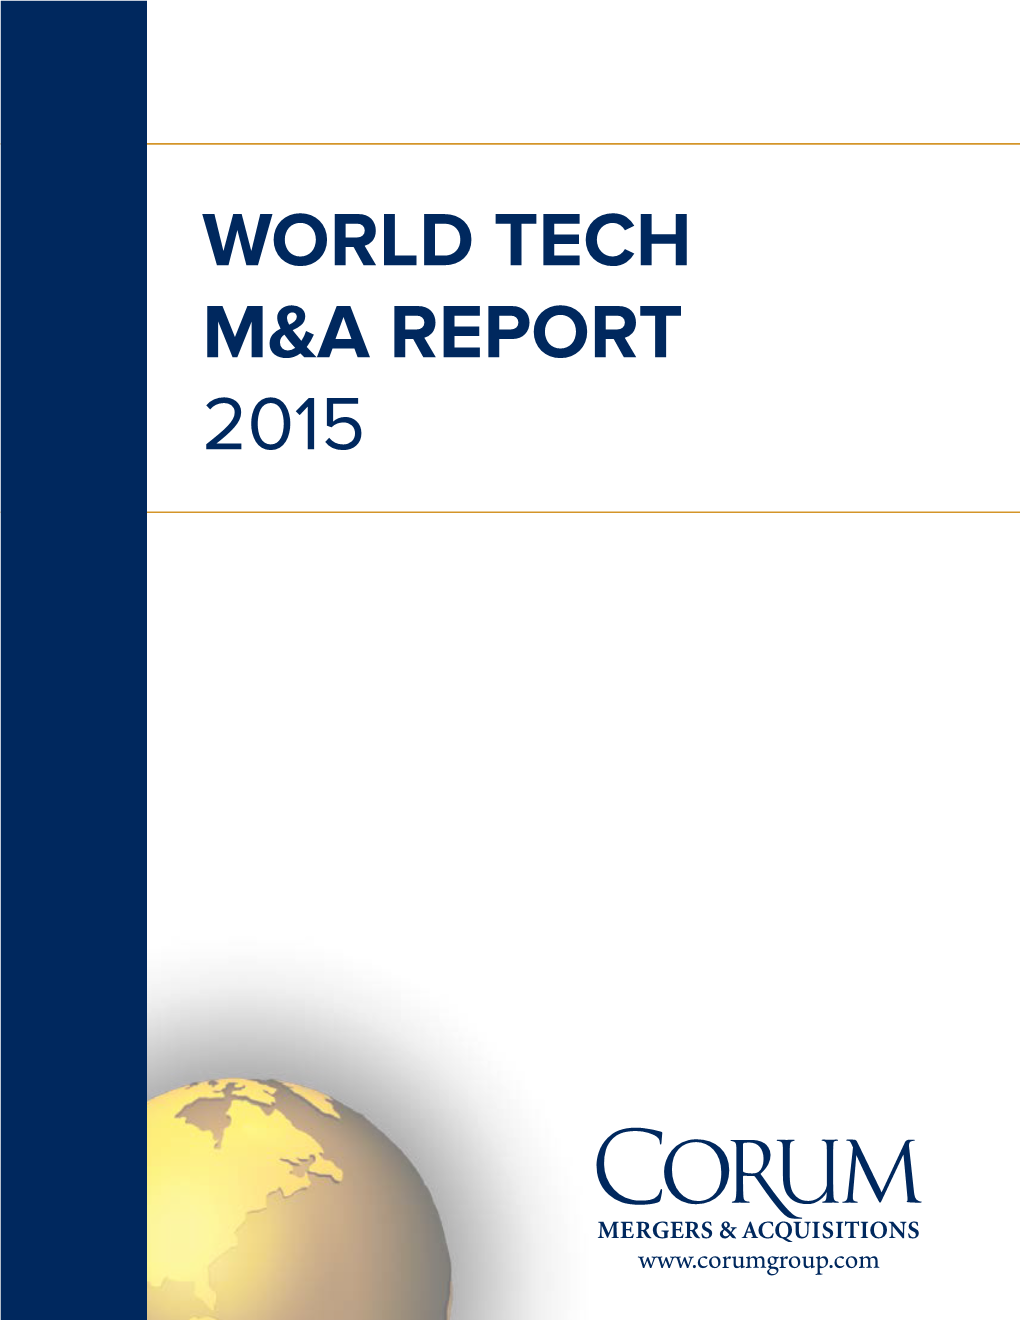 World Tech M&A Report 2015